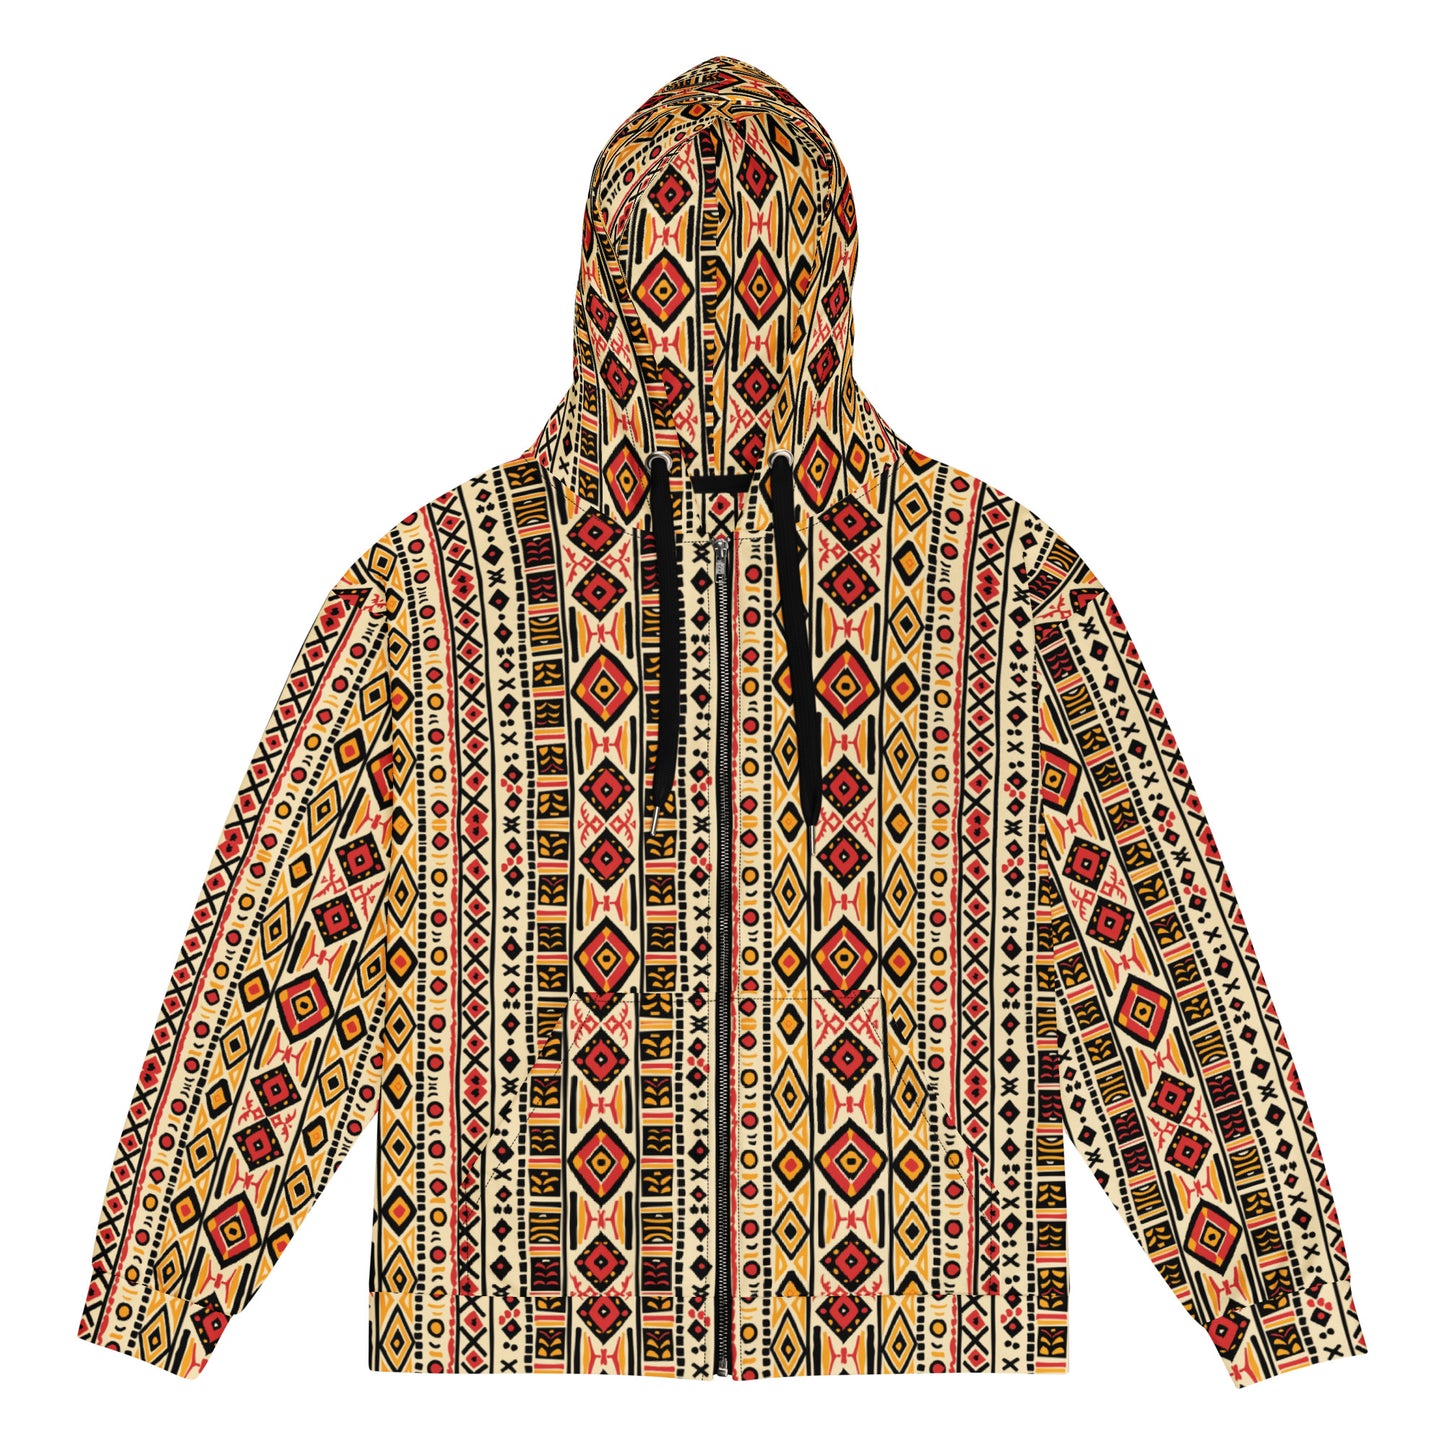 The African way - Unisex zip hoodie